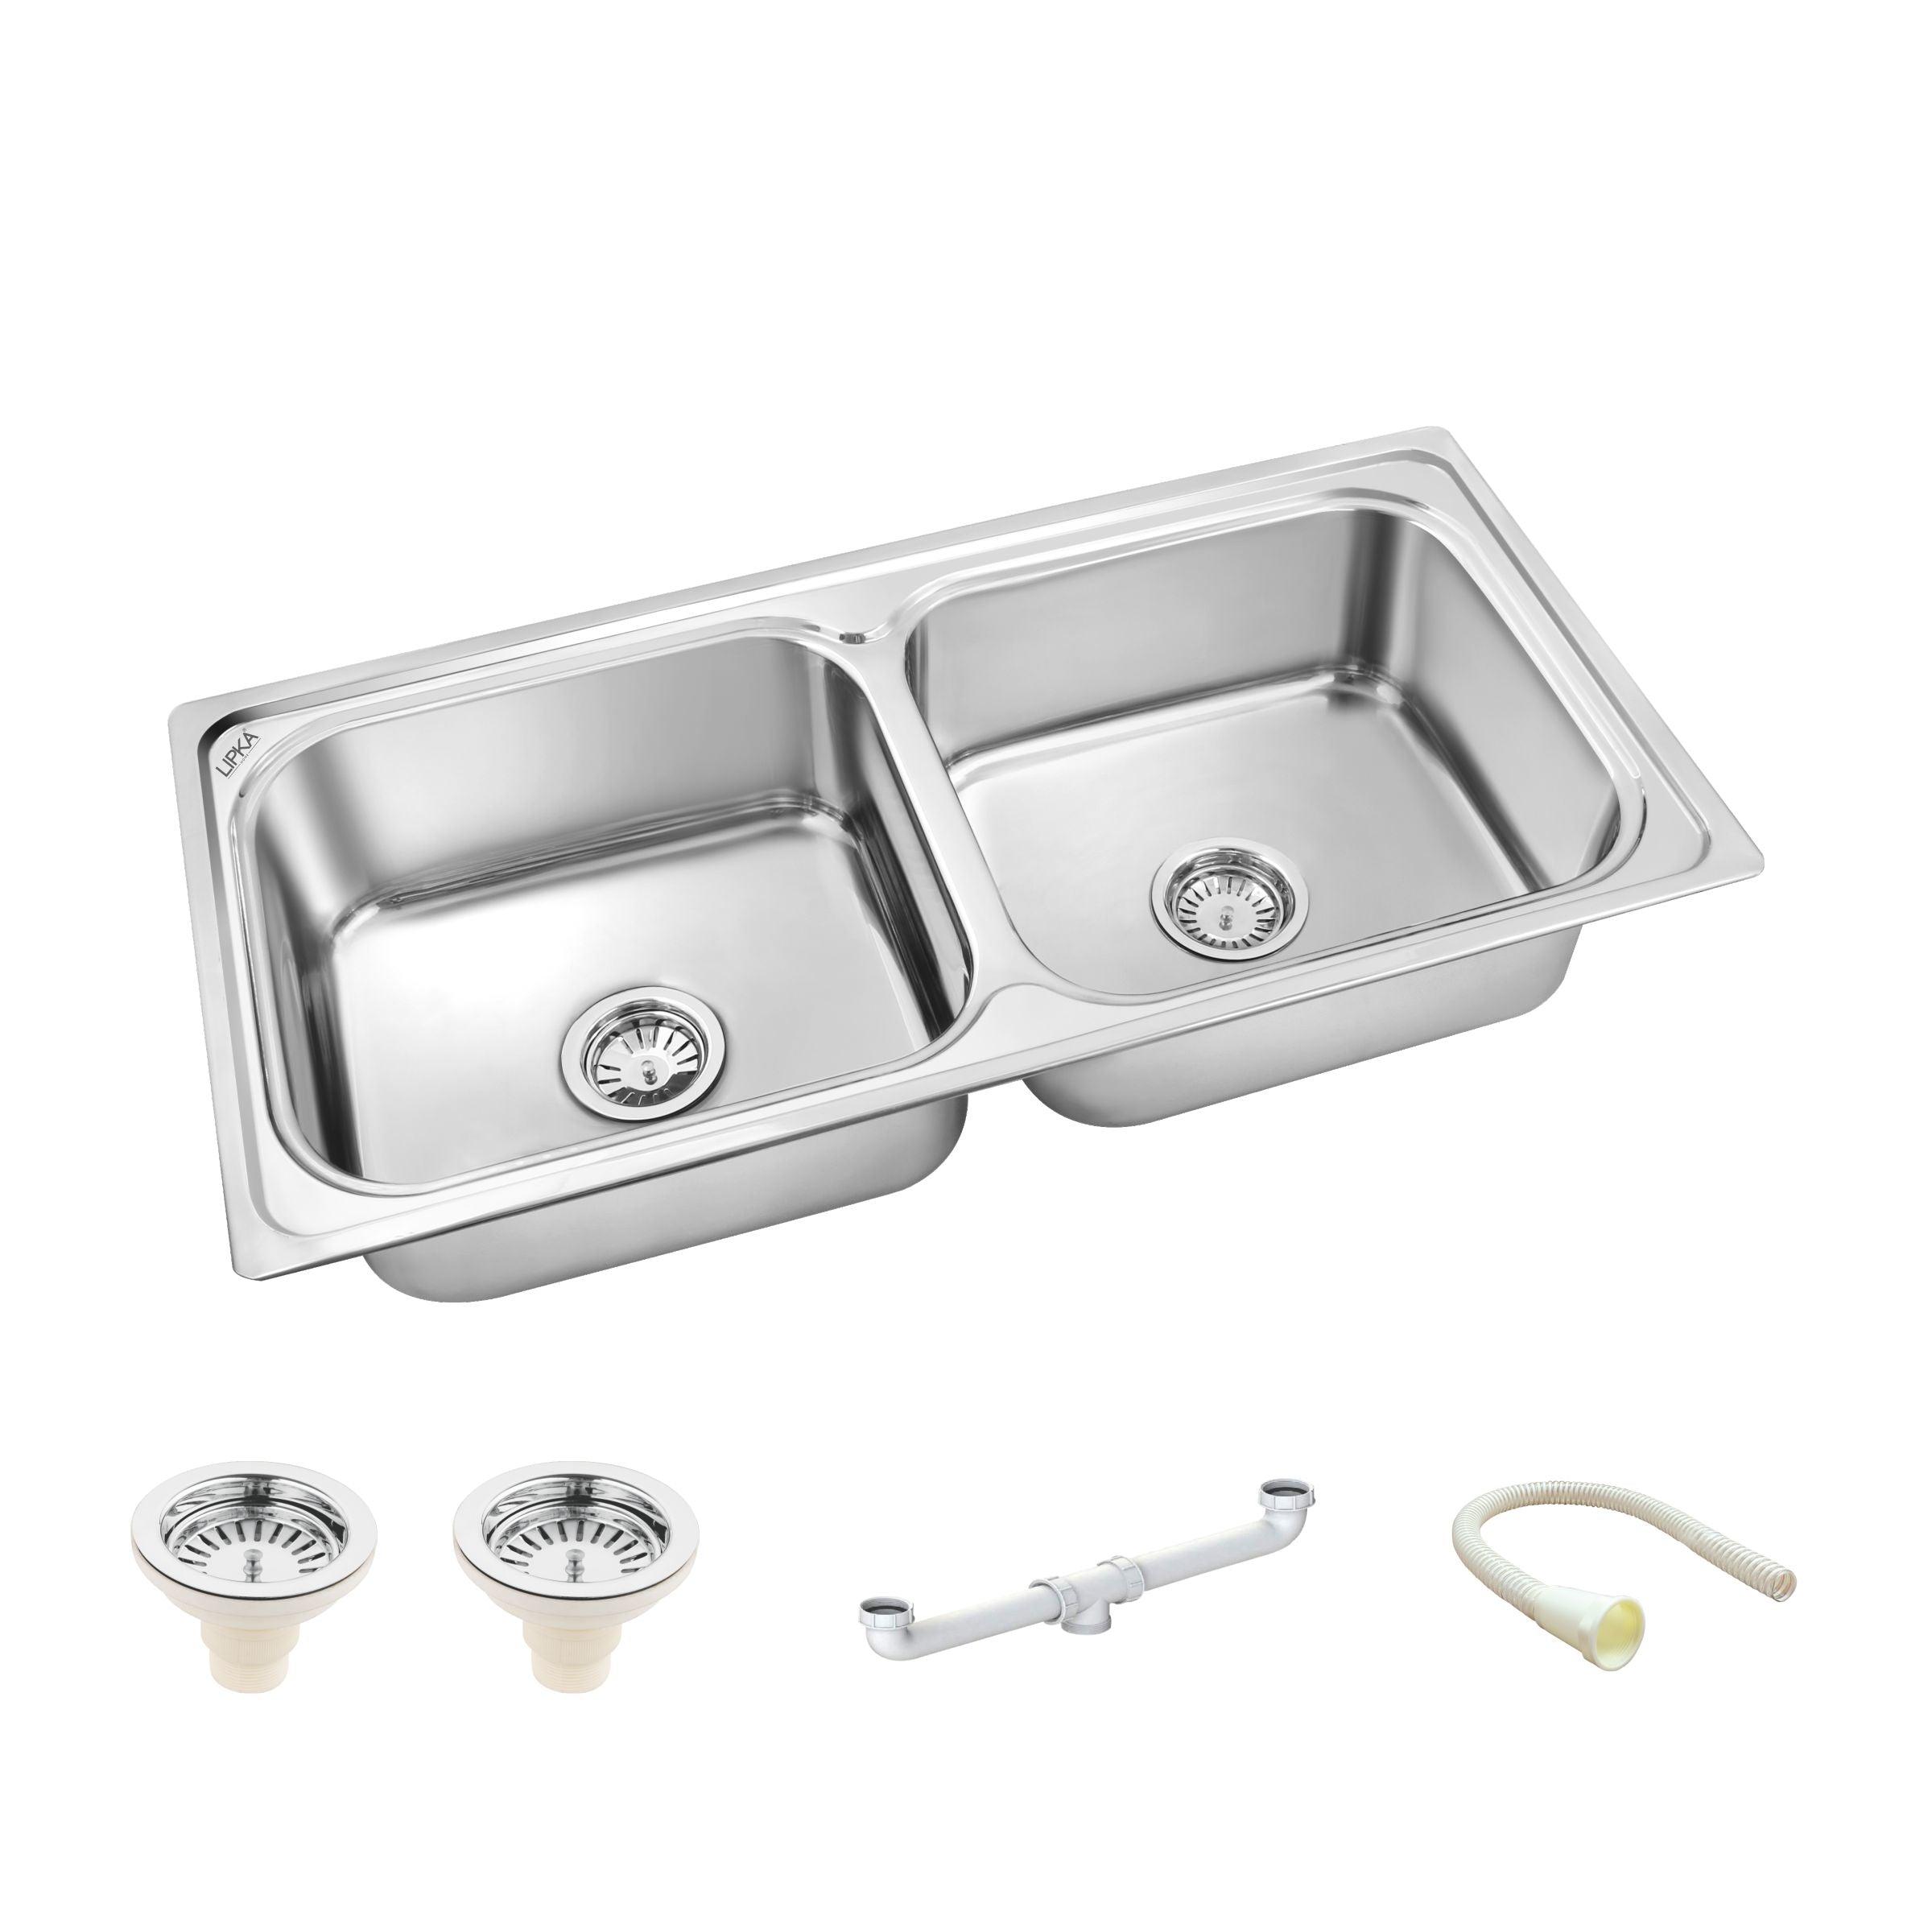 Square Double Bowl 304-Grade Kitchen Sink (37 x 18 x 8 Inches) - LIPKA - Lipka Home